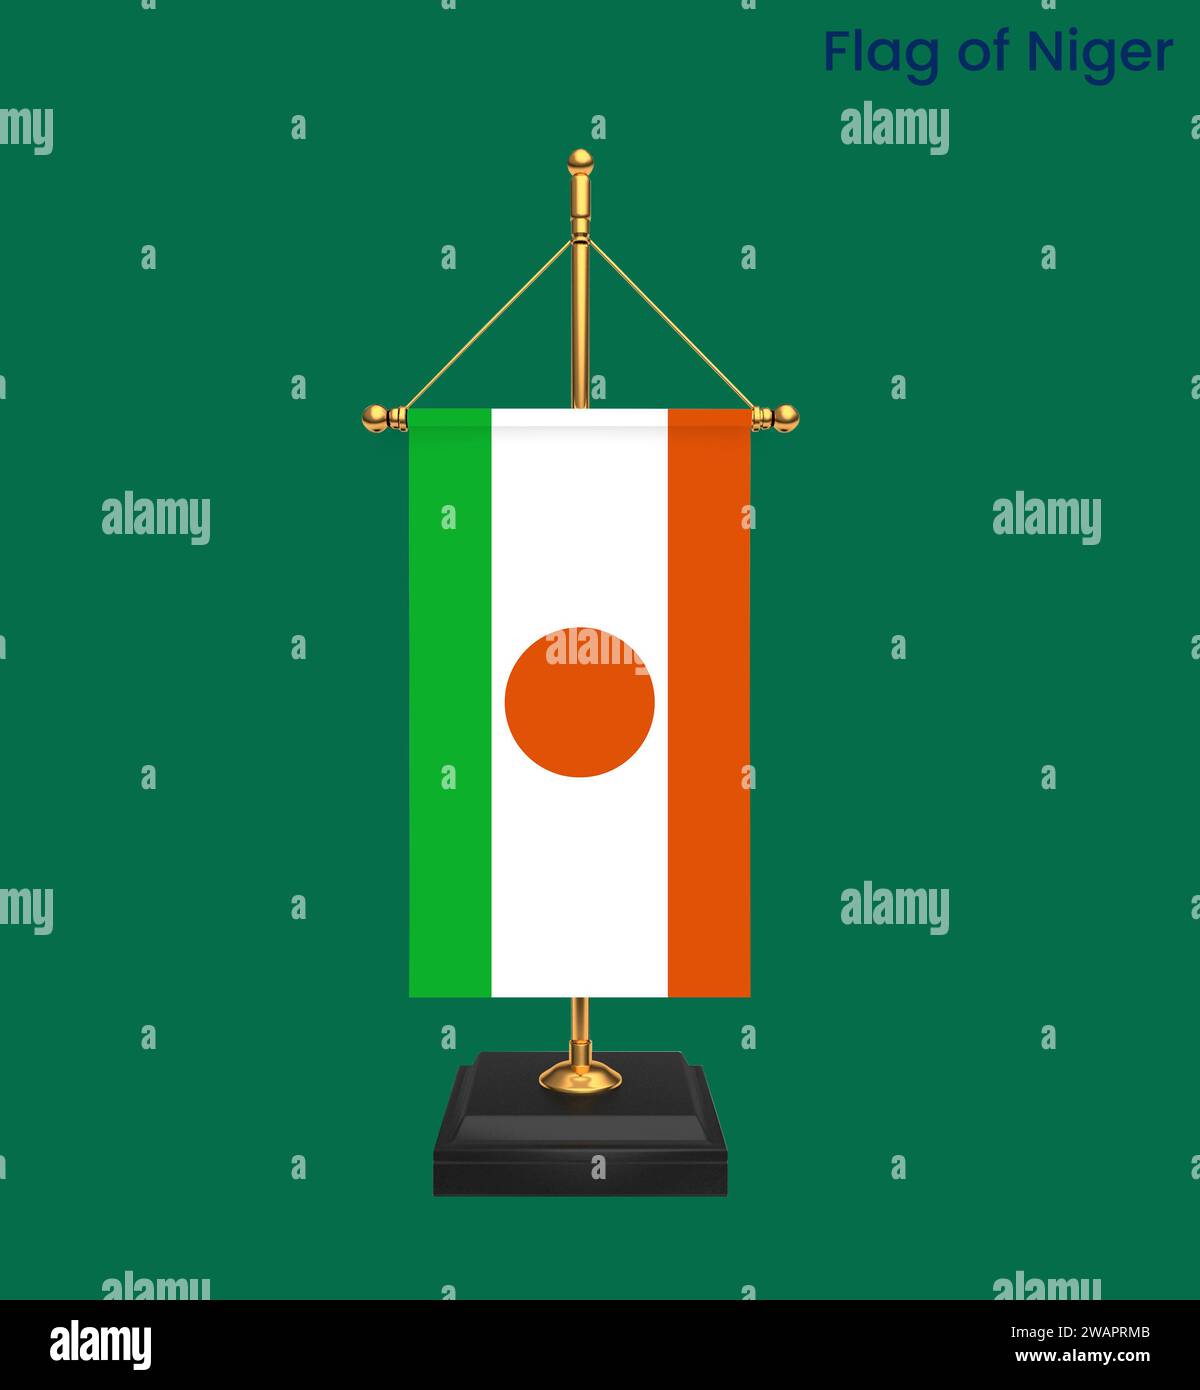 Detaillierte Flagge von Niger. Nationalflagge Niger. Afrika. 3D-Abbildung. Stockfoto